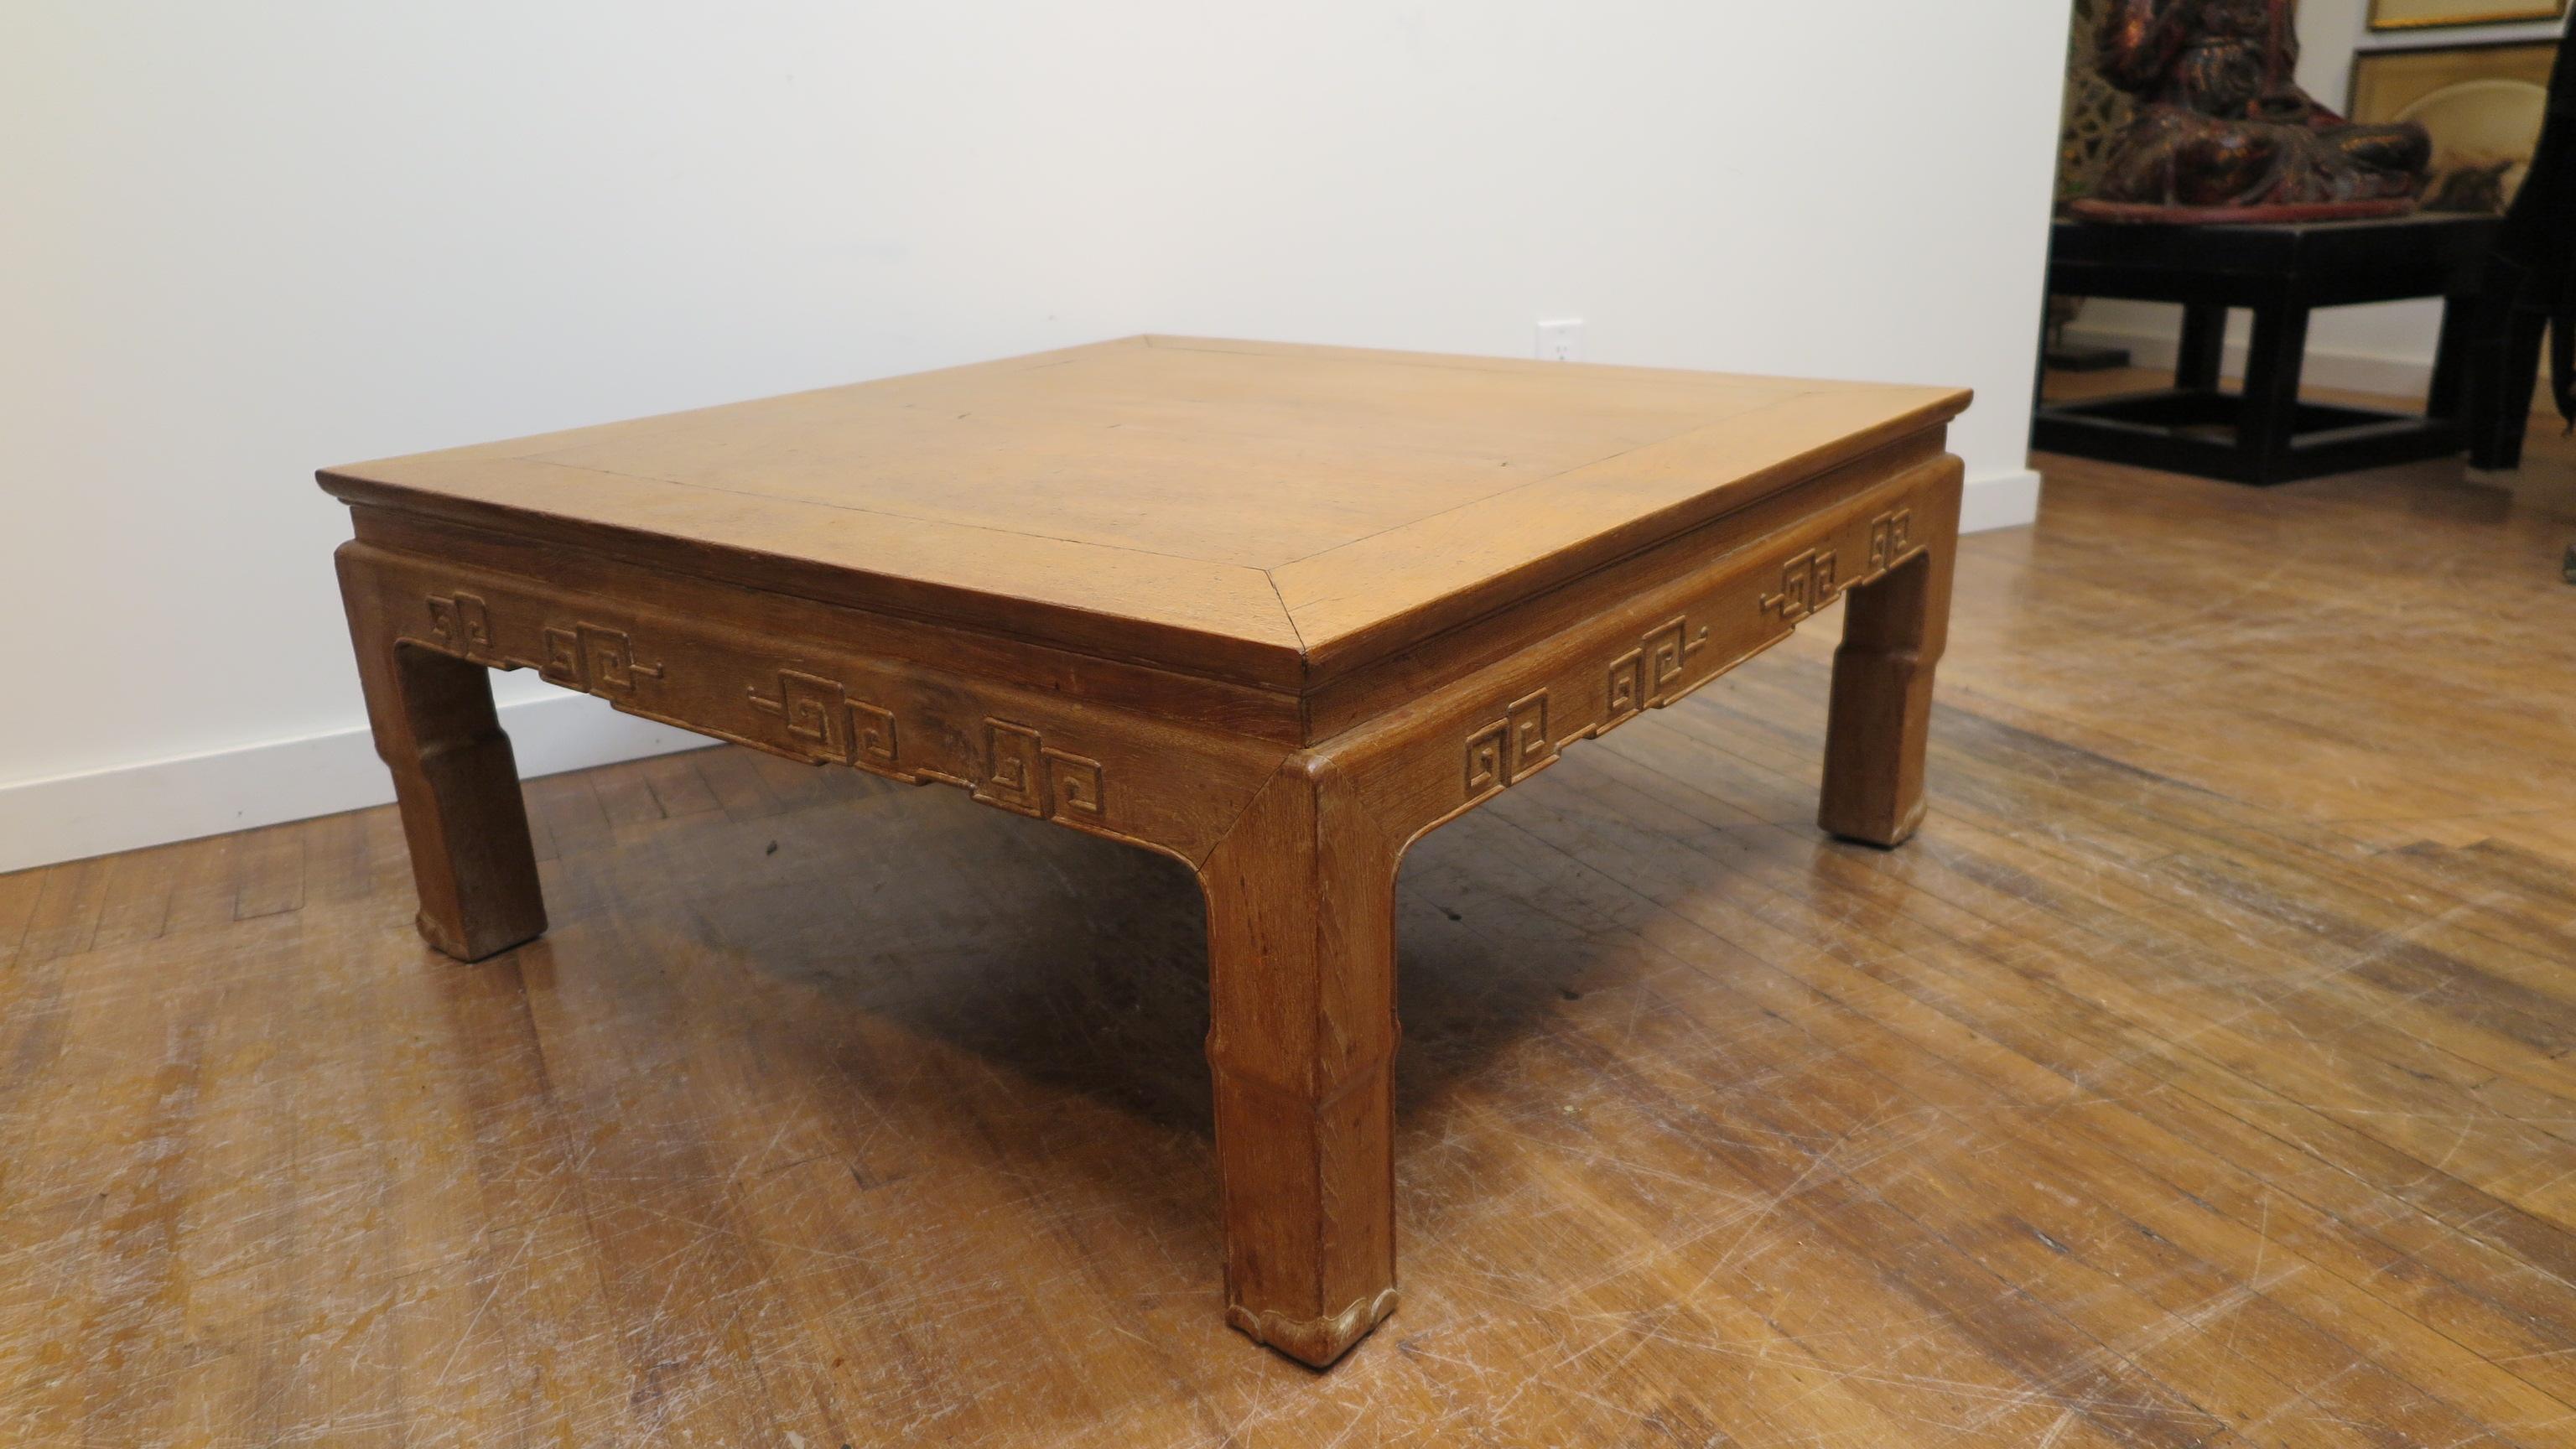 Chinesischer Tisch aus Huanghuali-Holz:: 20. Jahrhundert. Dieser Tisch wurde 1956 in Hongkong gekauft und in die USA verschifft. Aus der Familie des ursprünglichen Besitzers. Huang bezeichnet die älteren Möbelstücke:: die aus dem hochwertigsten